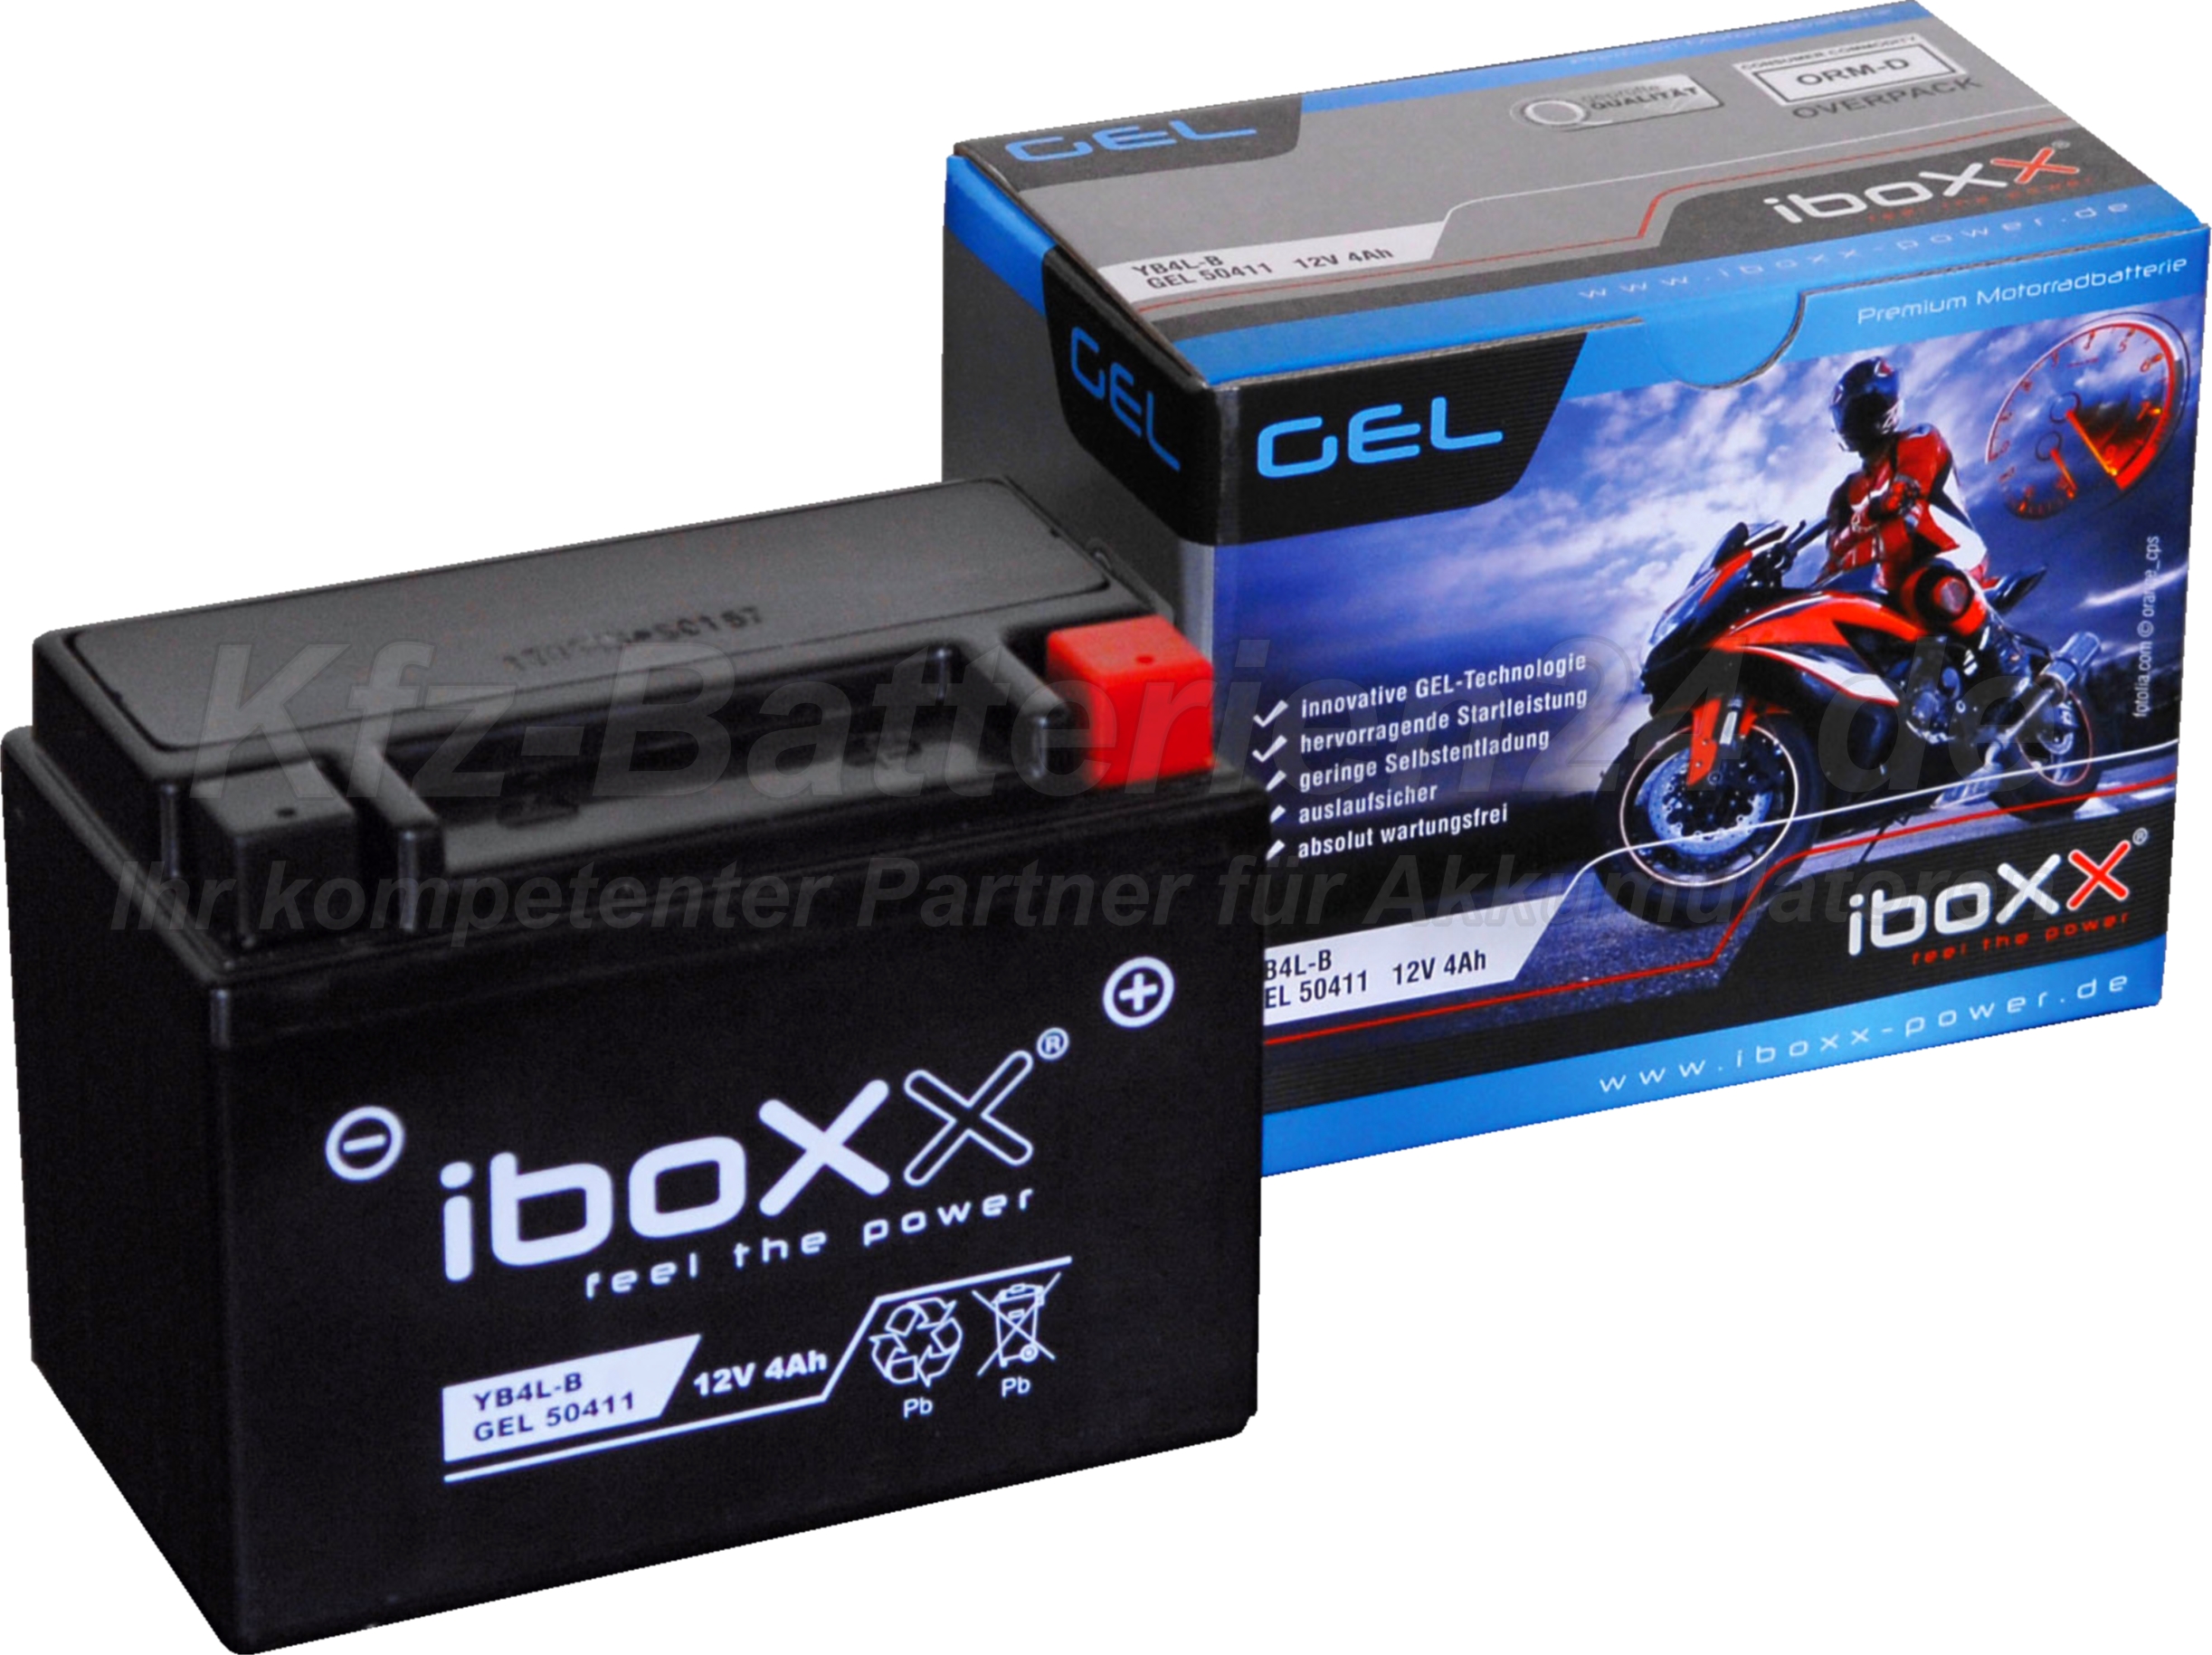 GEL Motorradbatterie 12V 4Ah 50411  YB4L-B Gelbatterie